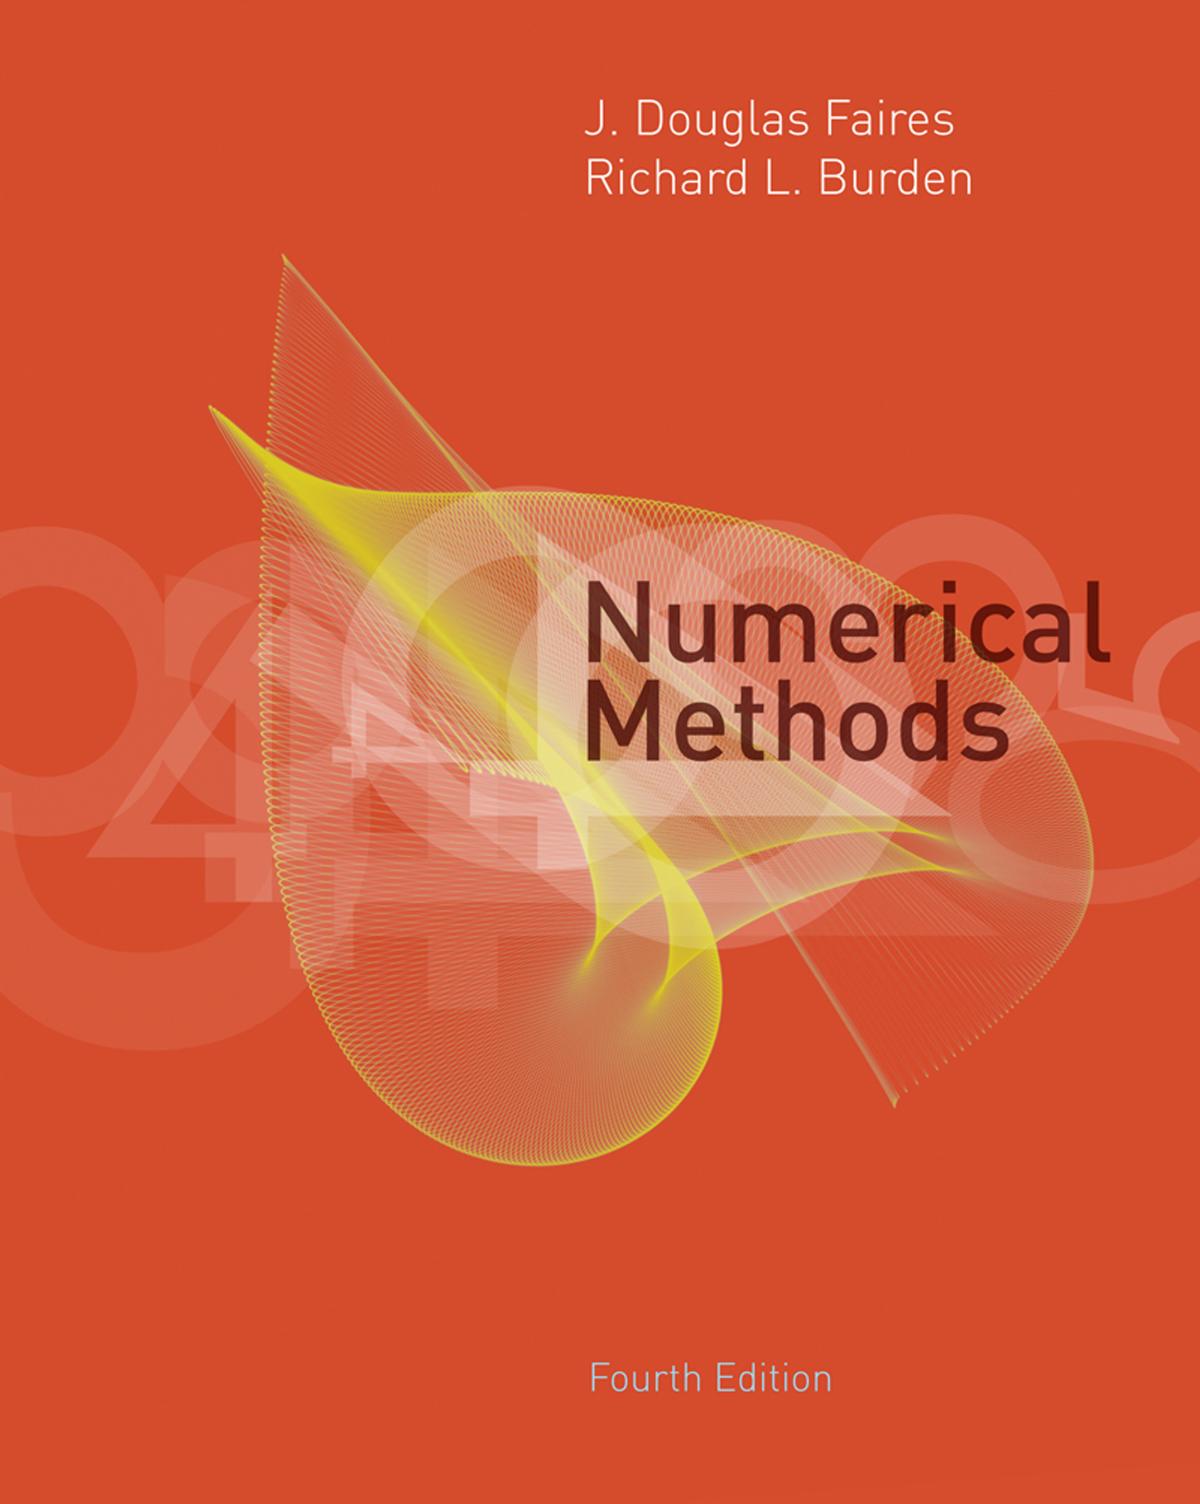 Numerical Methods, 4th Edition by J. Douglas Faires - J. Douglas Faires & Richard Burden.jpg